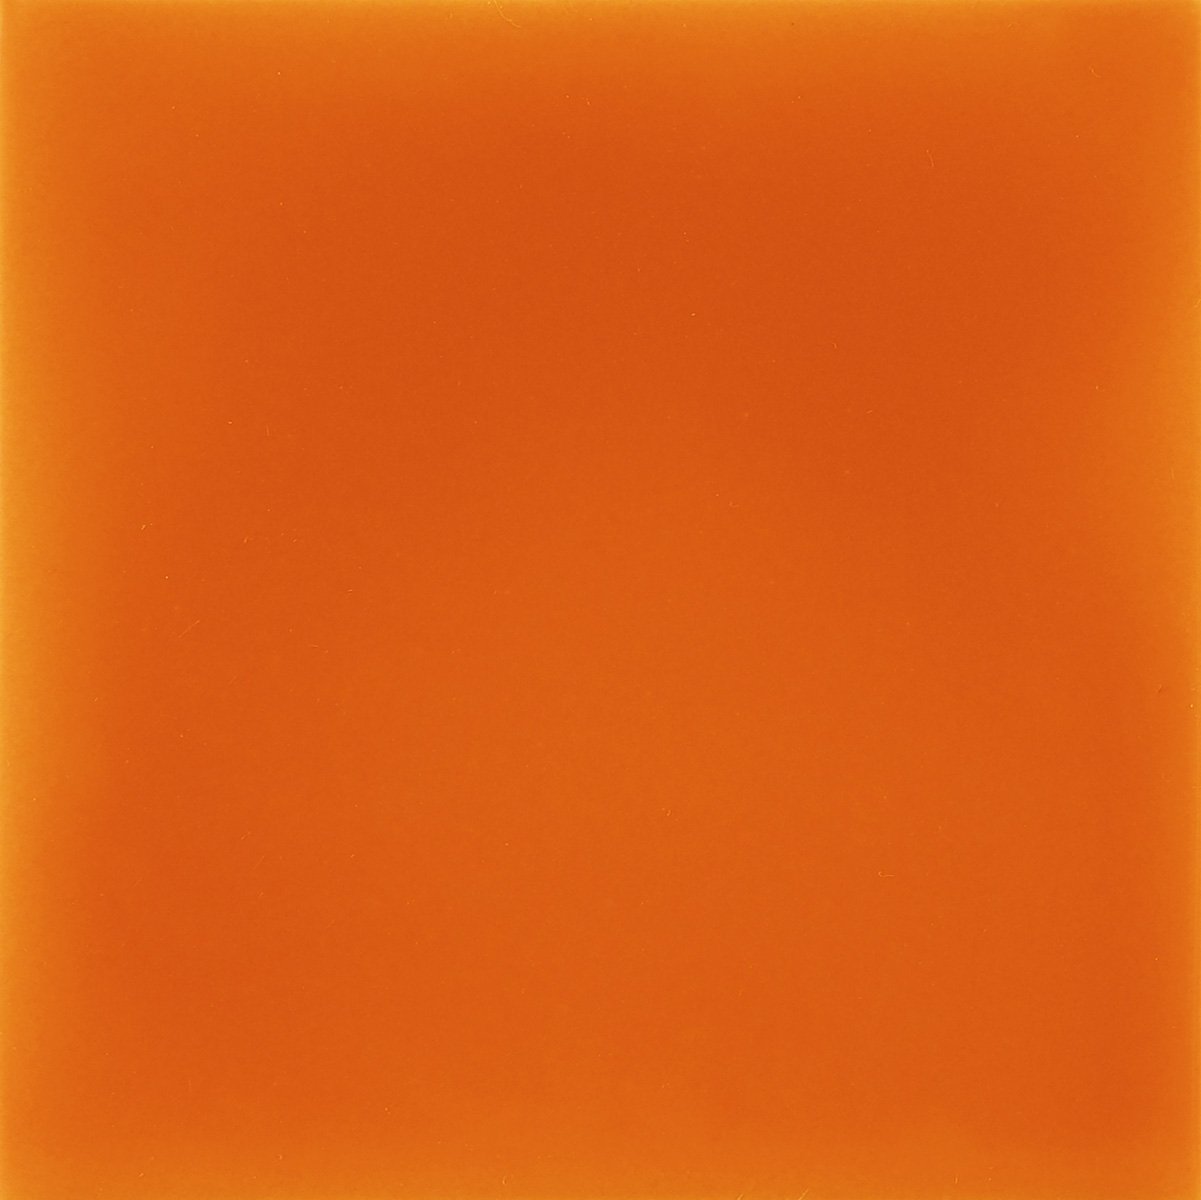 Керамическая плитка Aleluia Urban Atelier Laranja, цвет оранжевый, поверхность глянцевая, квадрат, 100x100